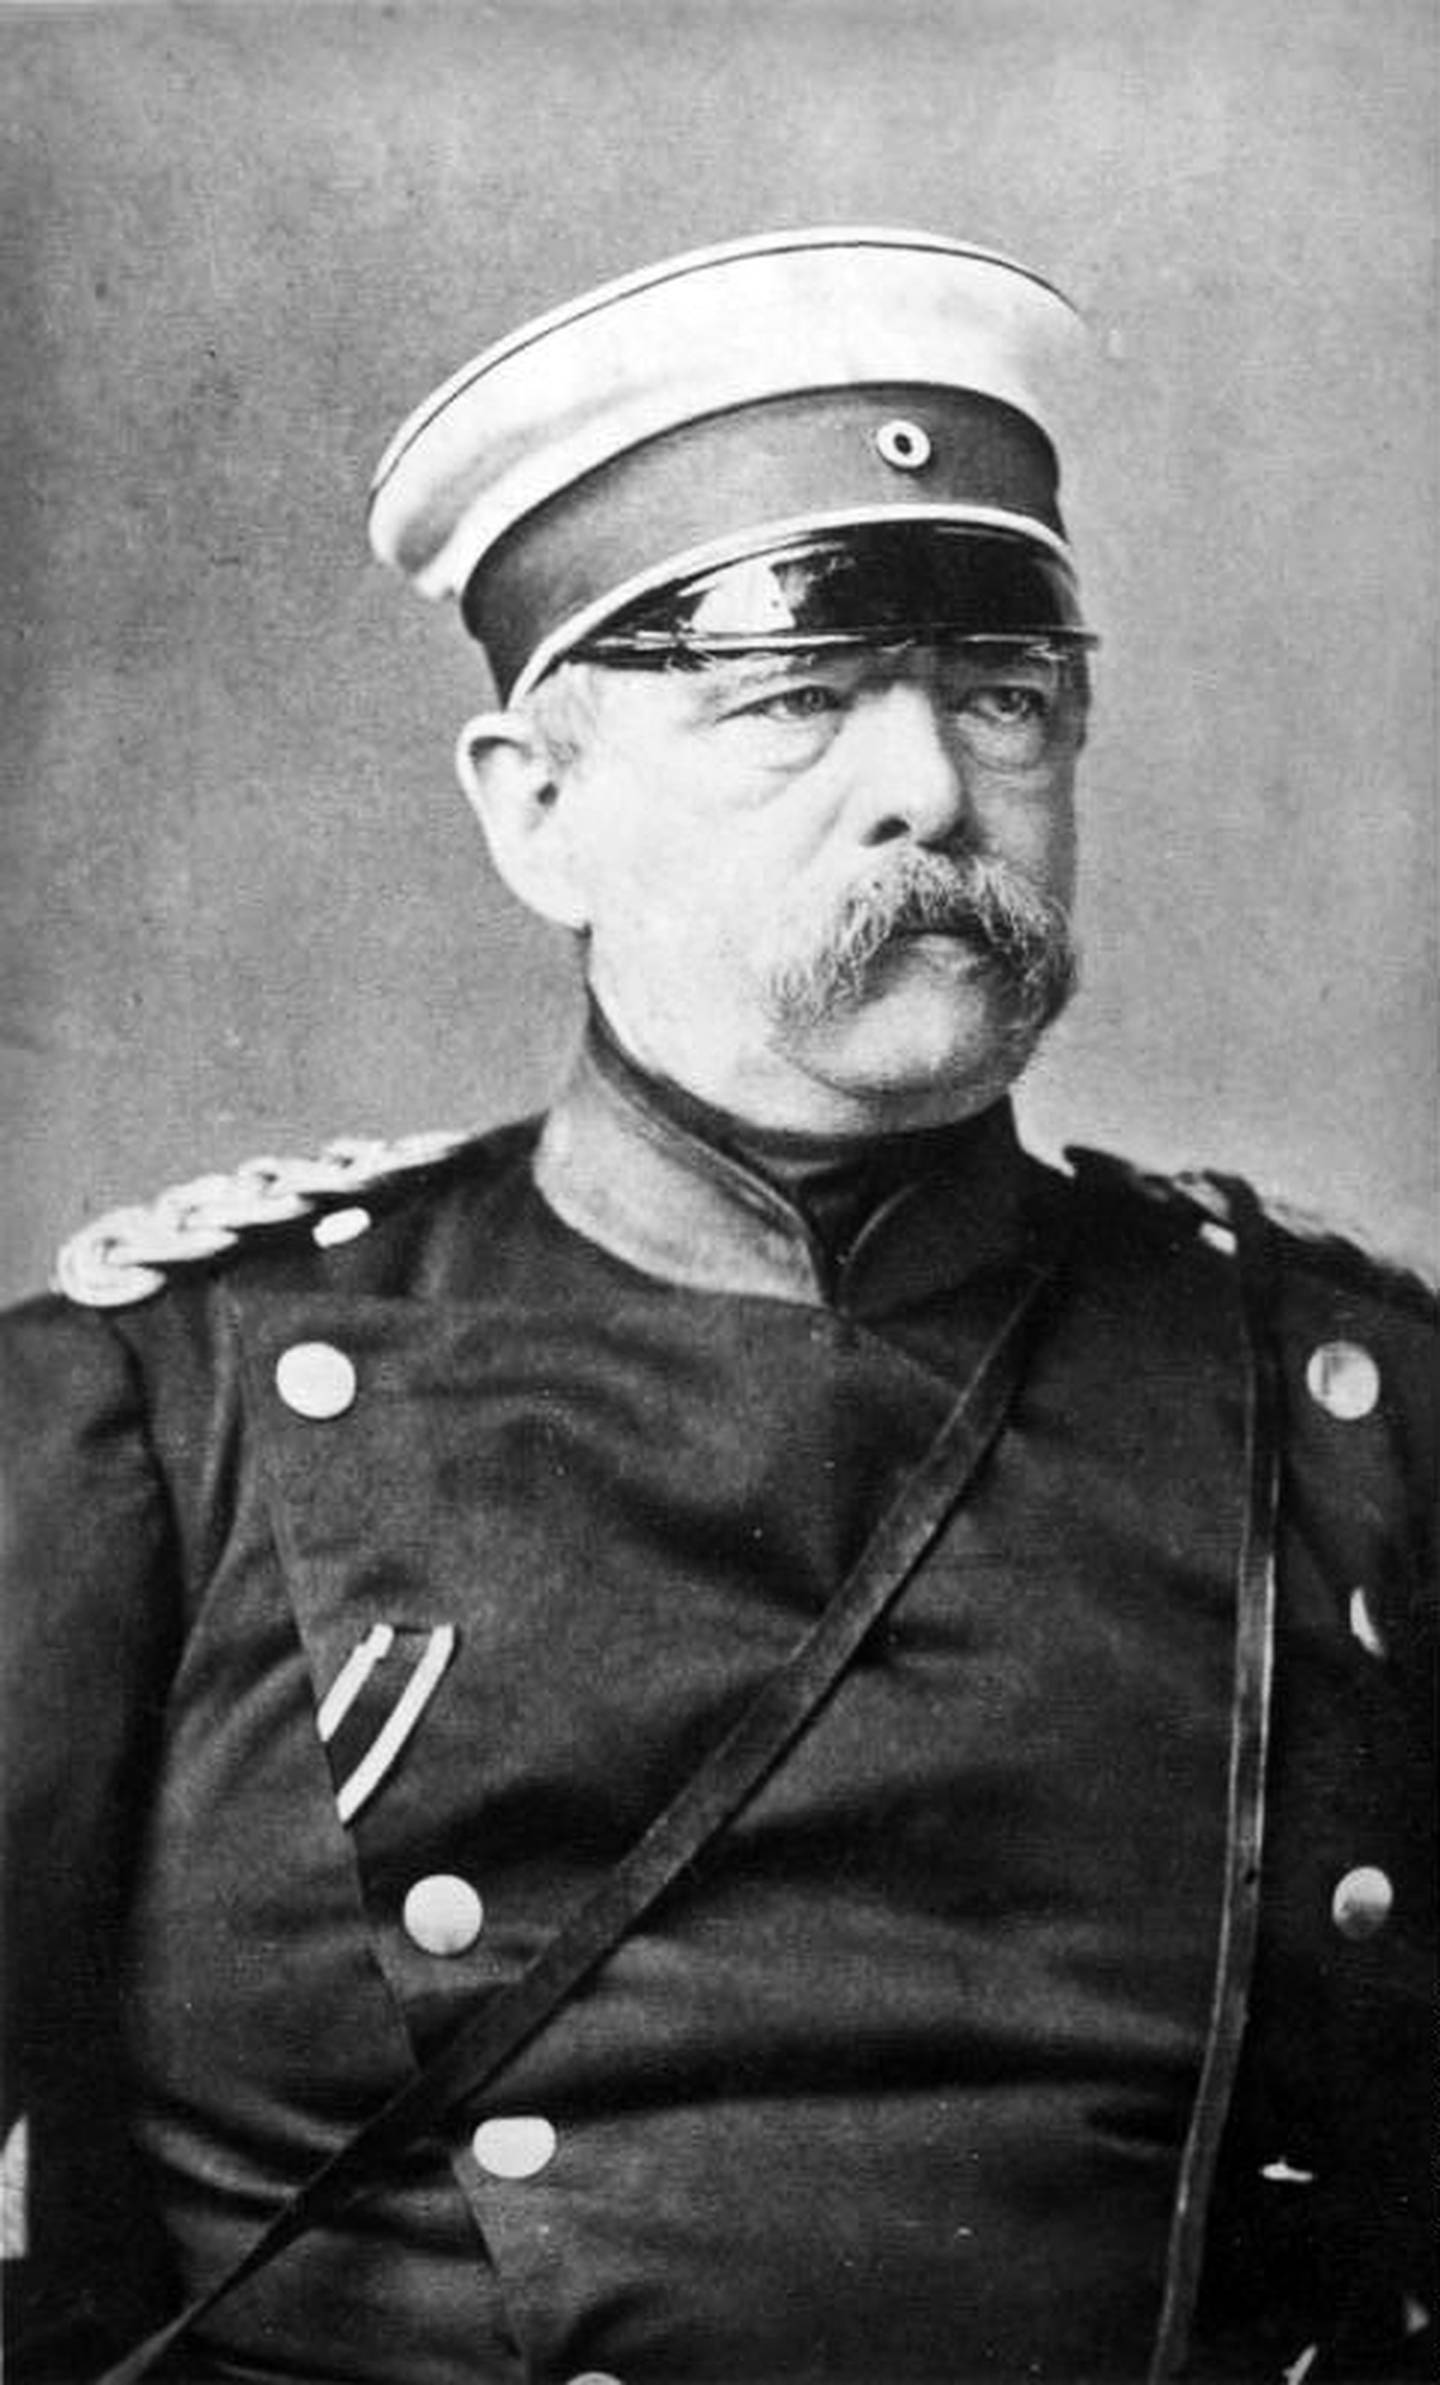 ARKITEKT: Otto von Bismarck (1815-1898) var sjefsarkitekten for det nye tyske keiserriket, og samlet riket gjennom "blod og jern".